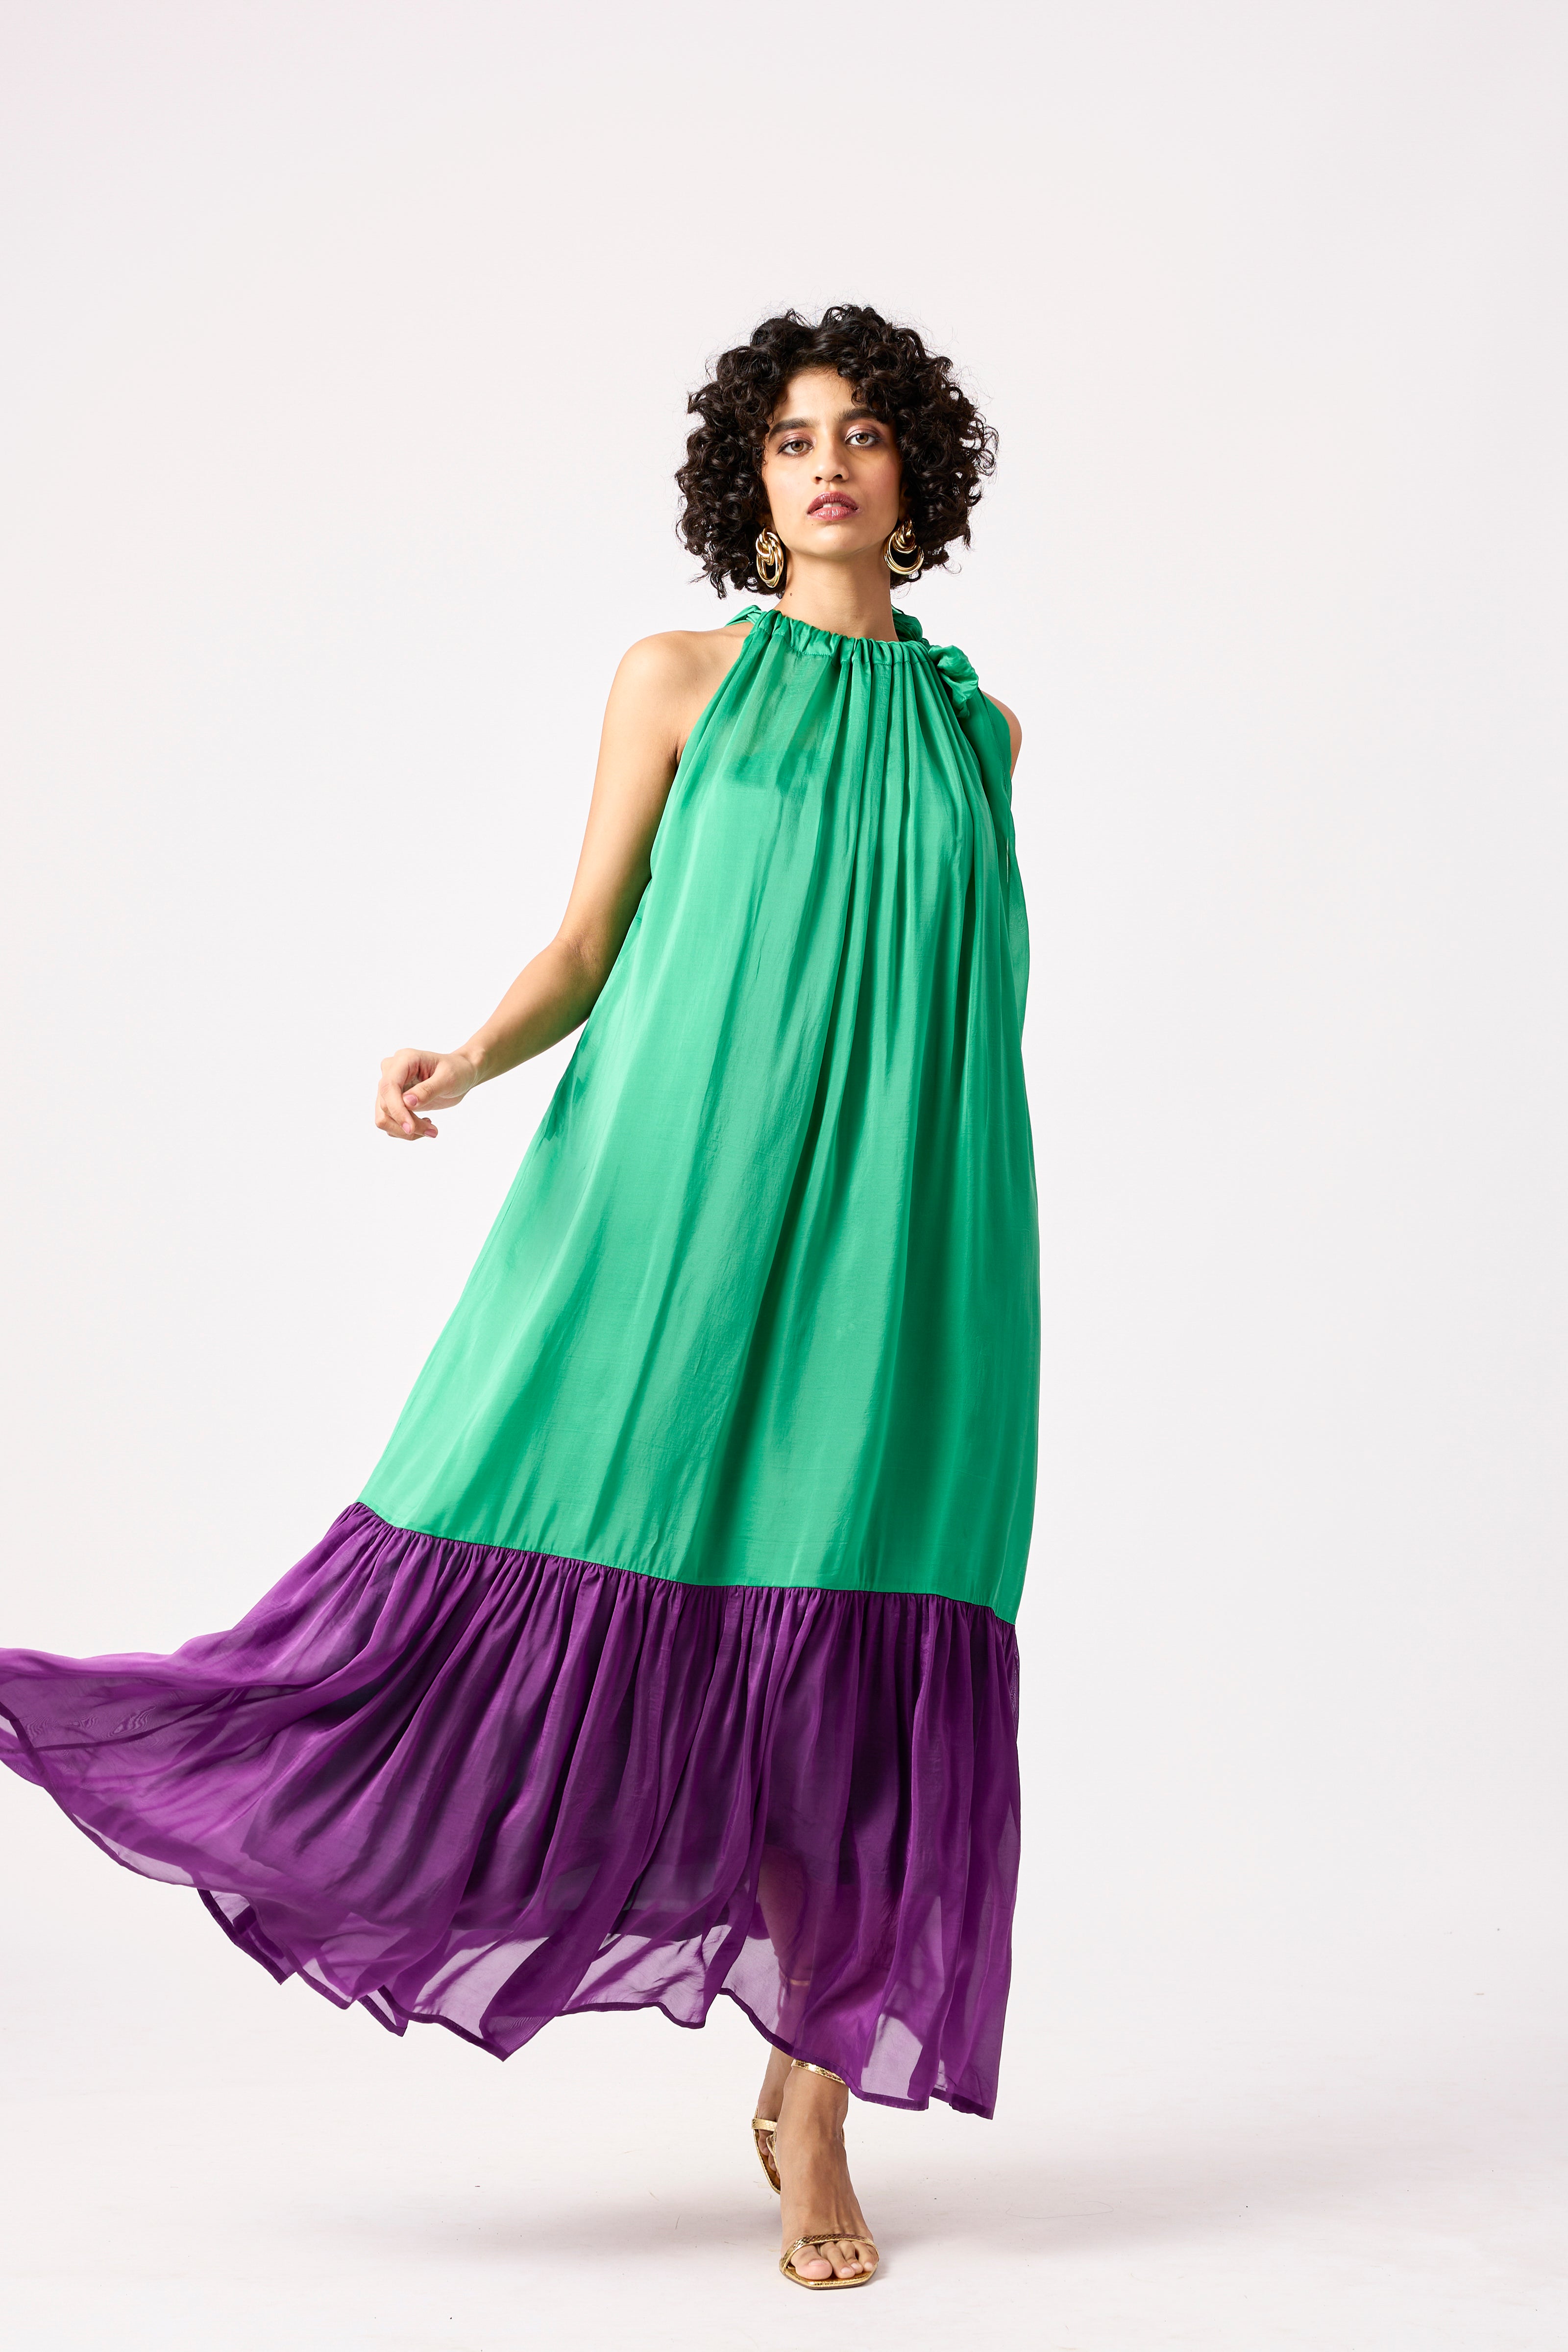 Victoria Organza Dress - Bright Green & Purple